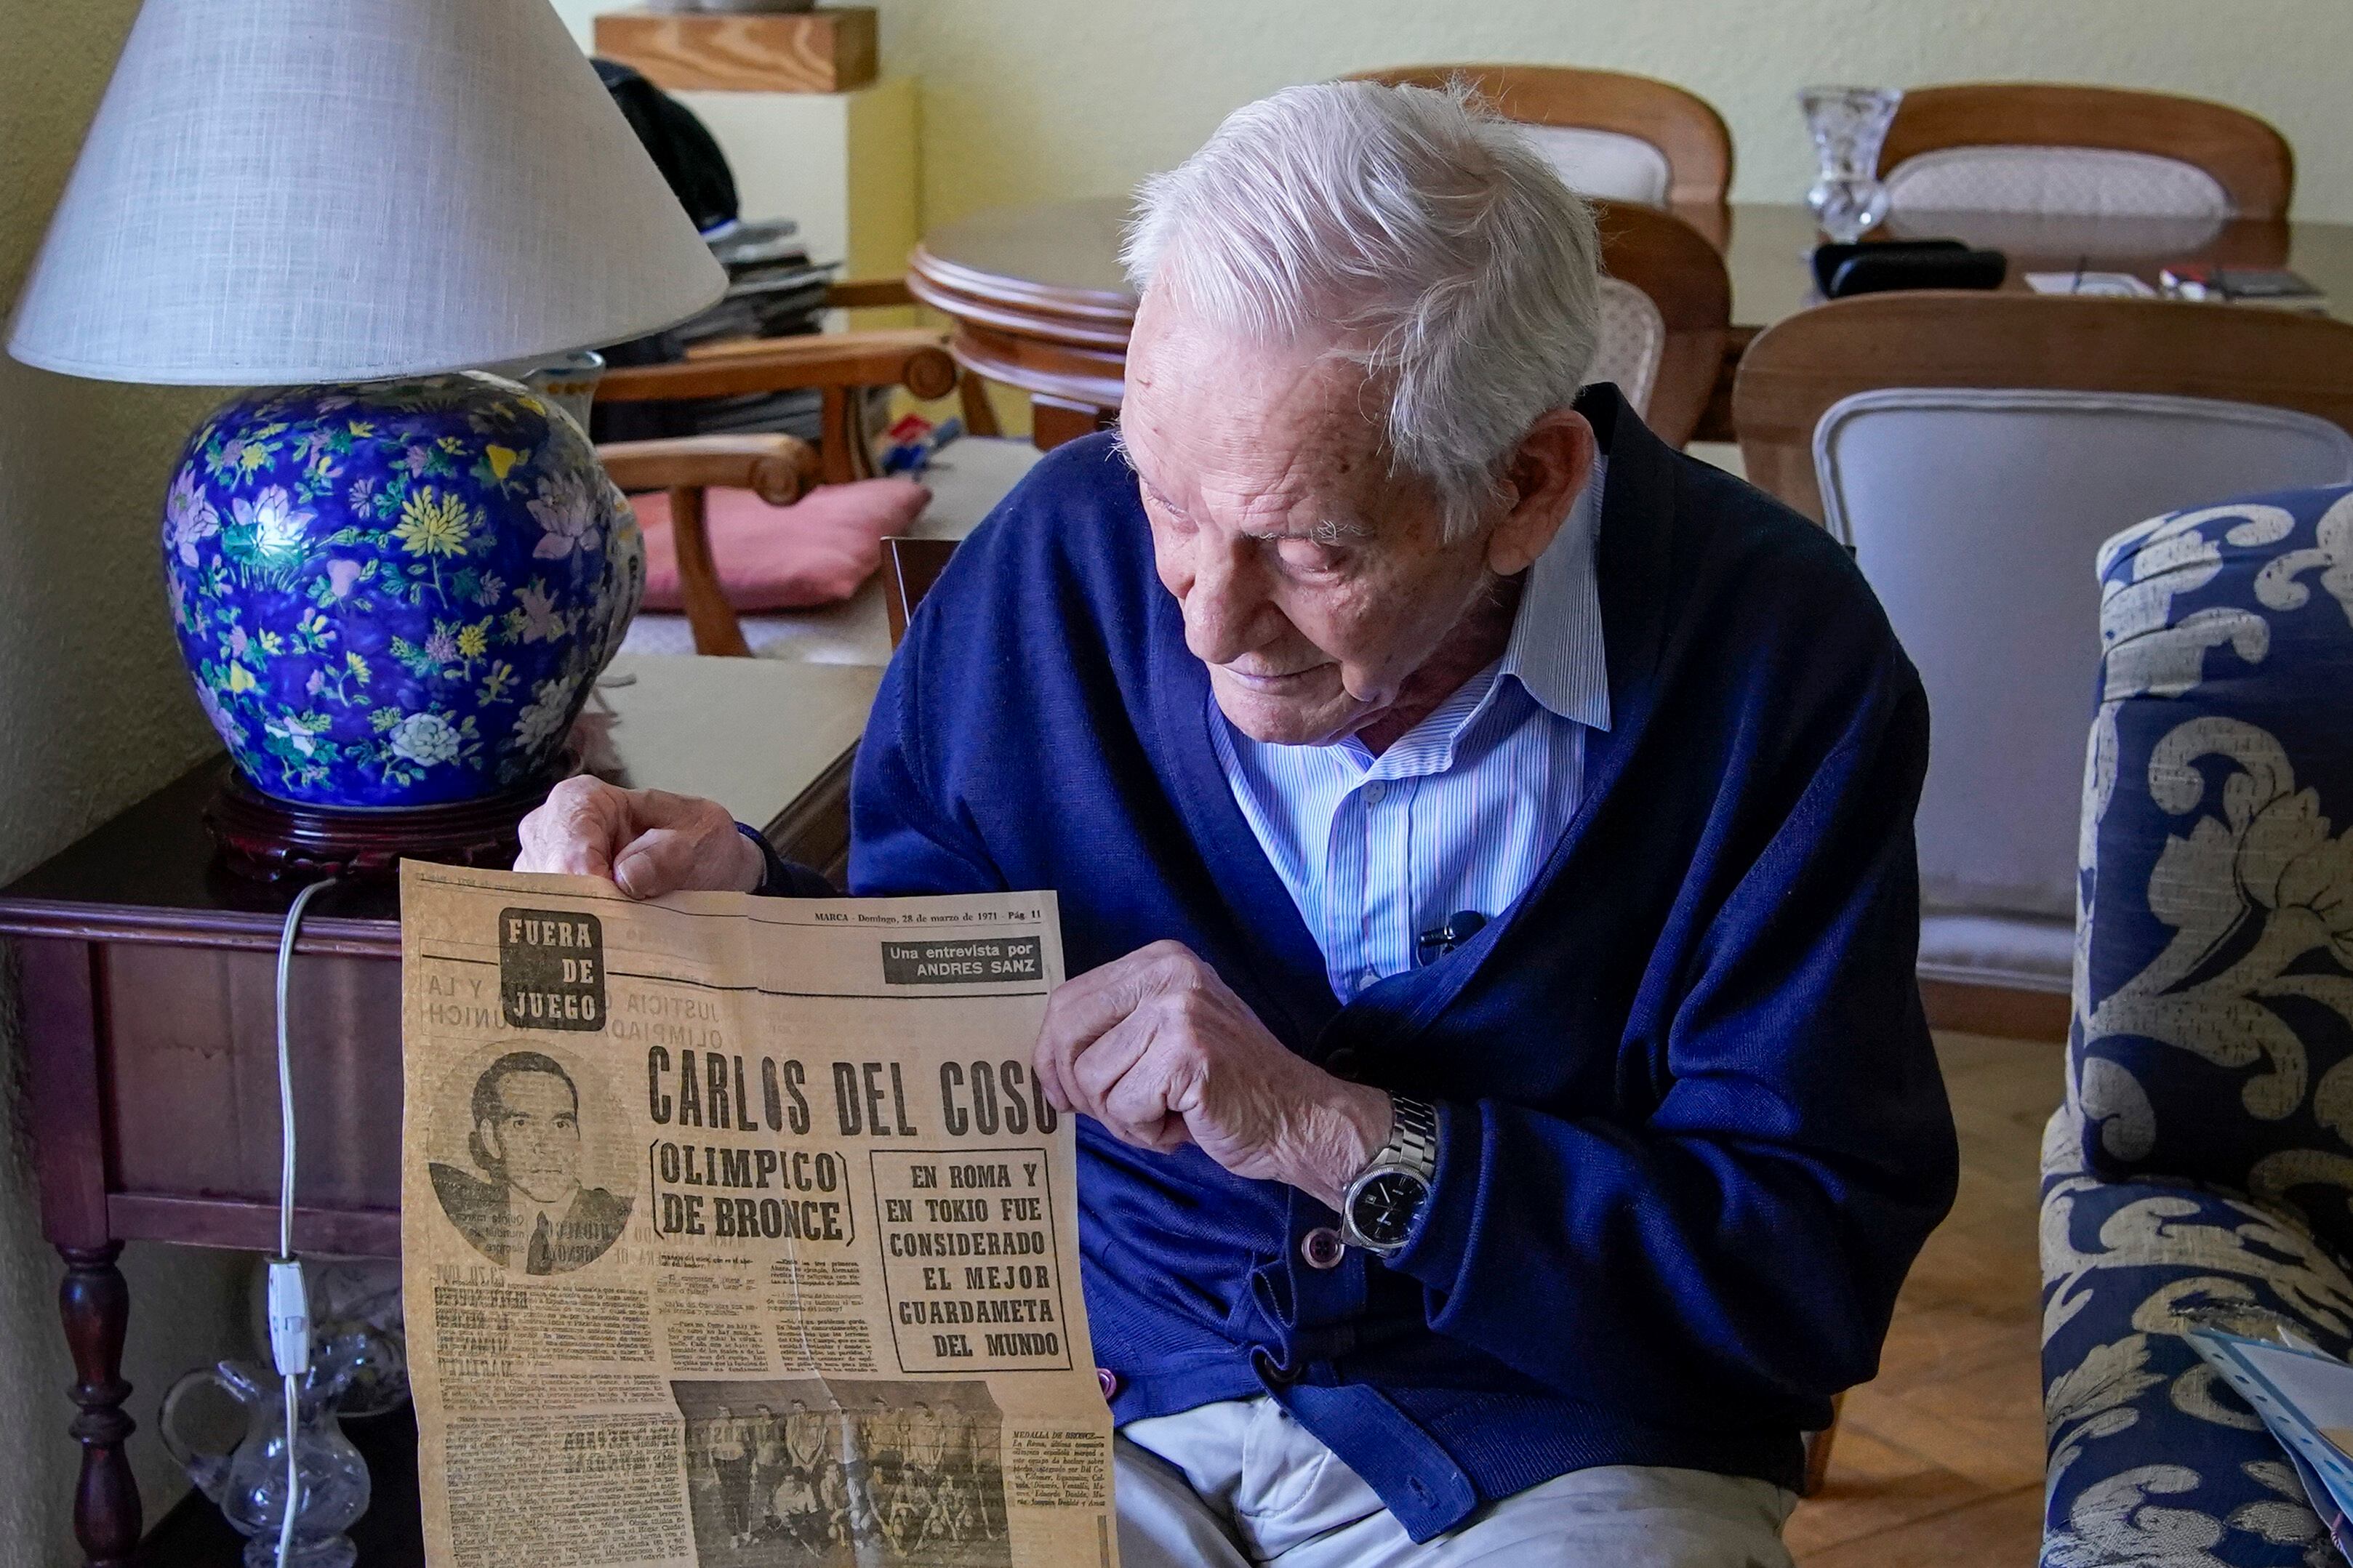 Carlos del Coso sujeta un recorte de periódico en su casa de Aravaca (Madrid) en el que se dice que es el mejor portero del mundo.